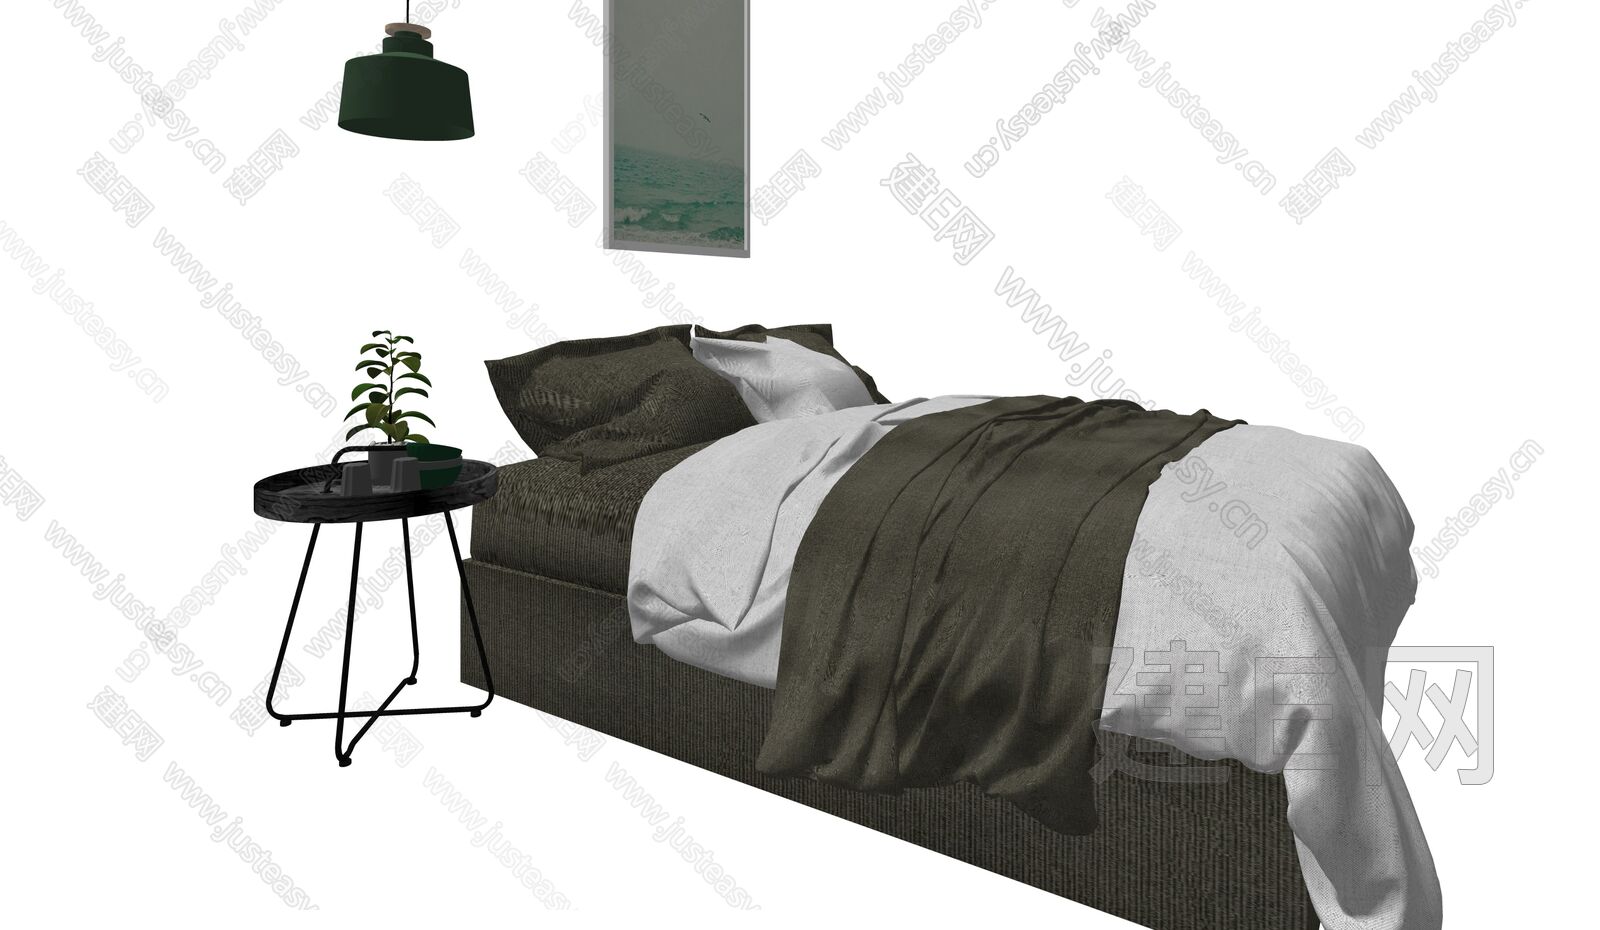 飞森 新中式卧室双人床_设计素材库免费下载-美间设计